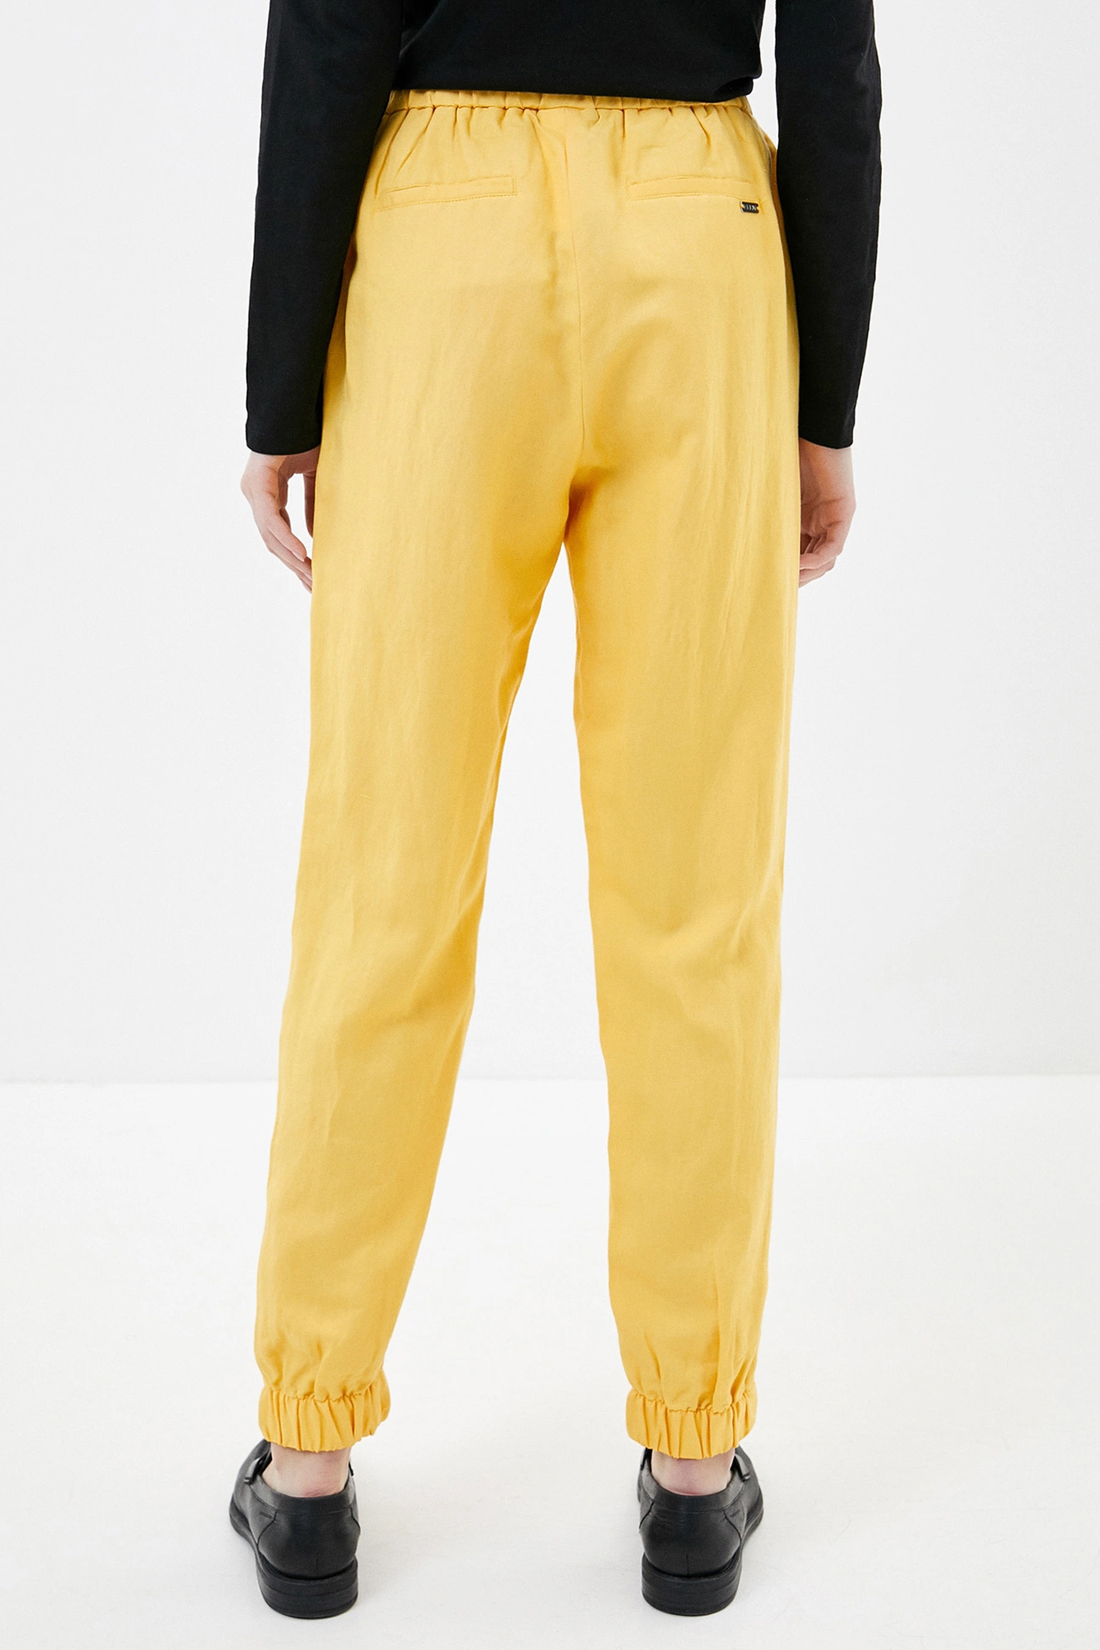 Спортивные брюки женские Baon B290048 желтые XL